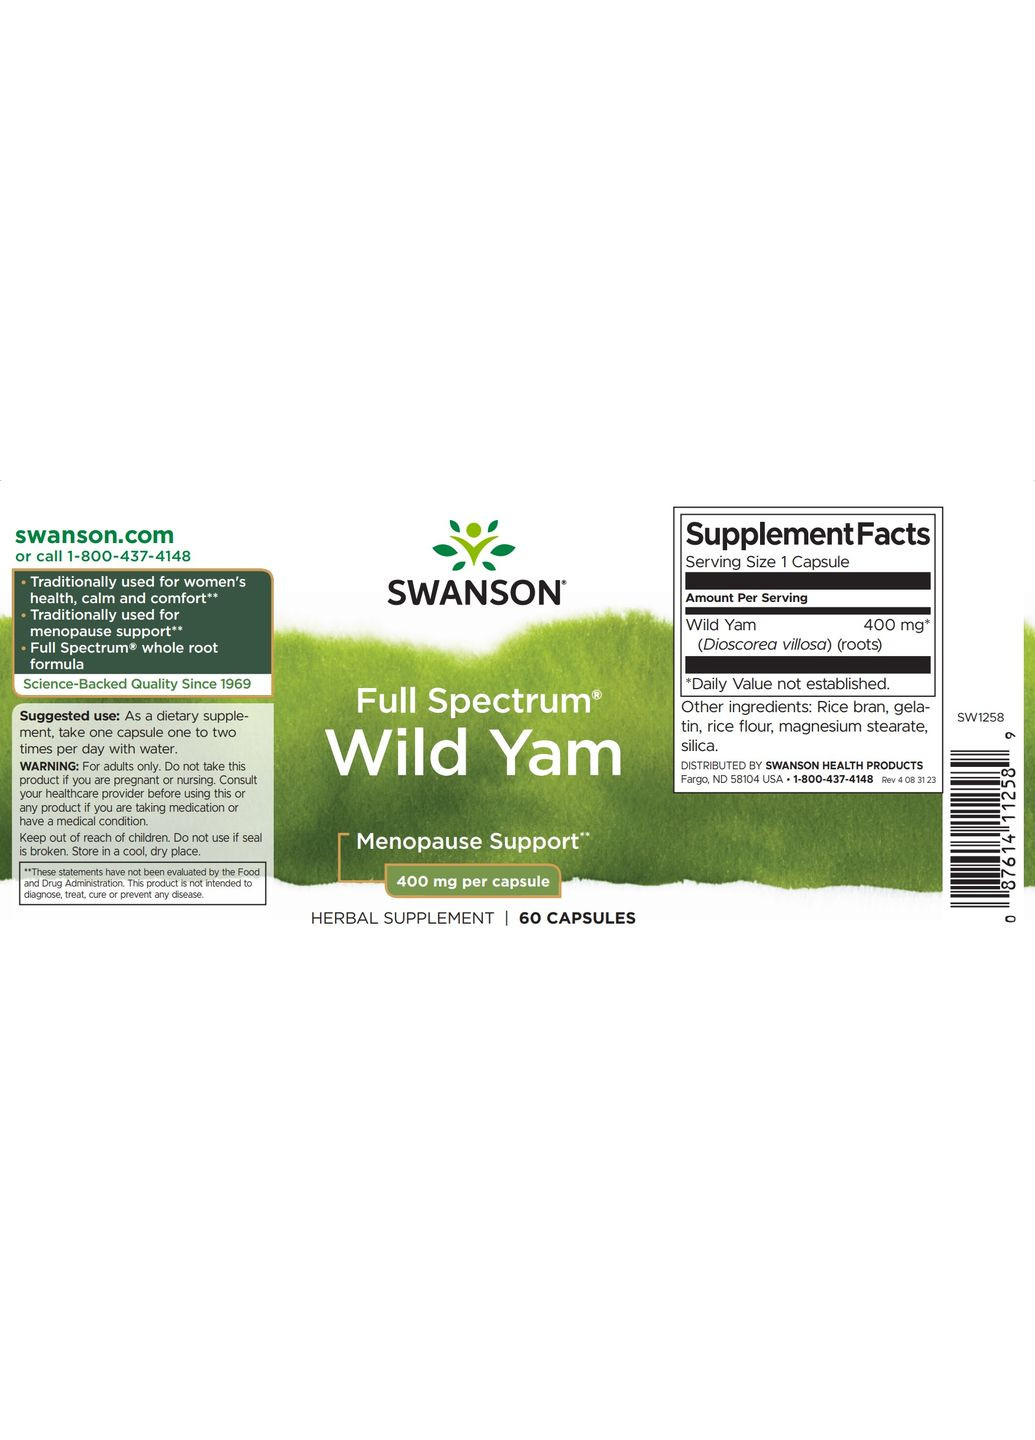 Корень дикого ямса Full Spectrum Wild Yam Root 400 mg 60 caps Swanson (292632726)